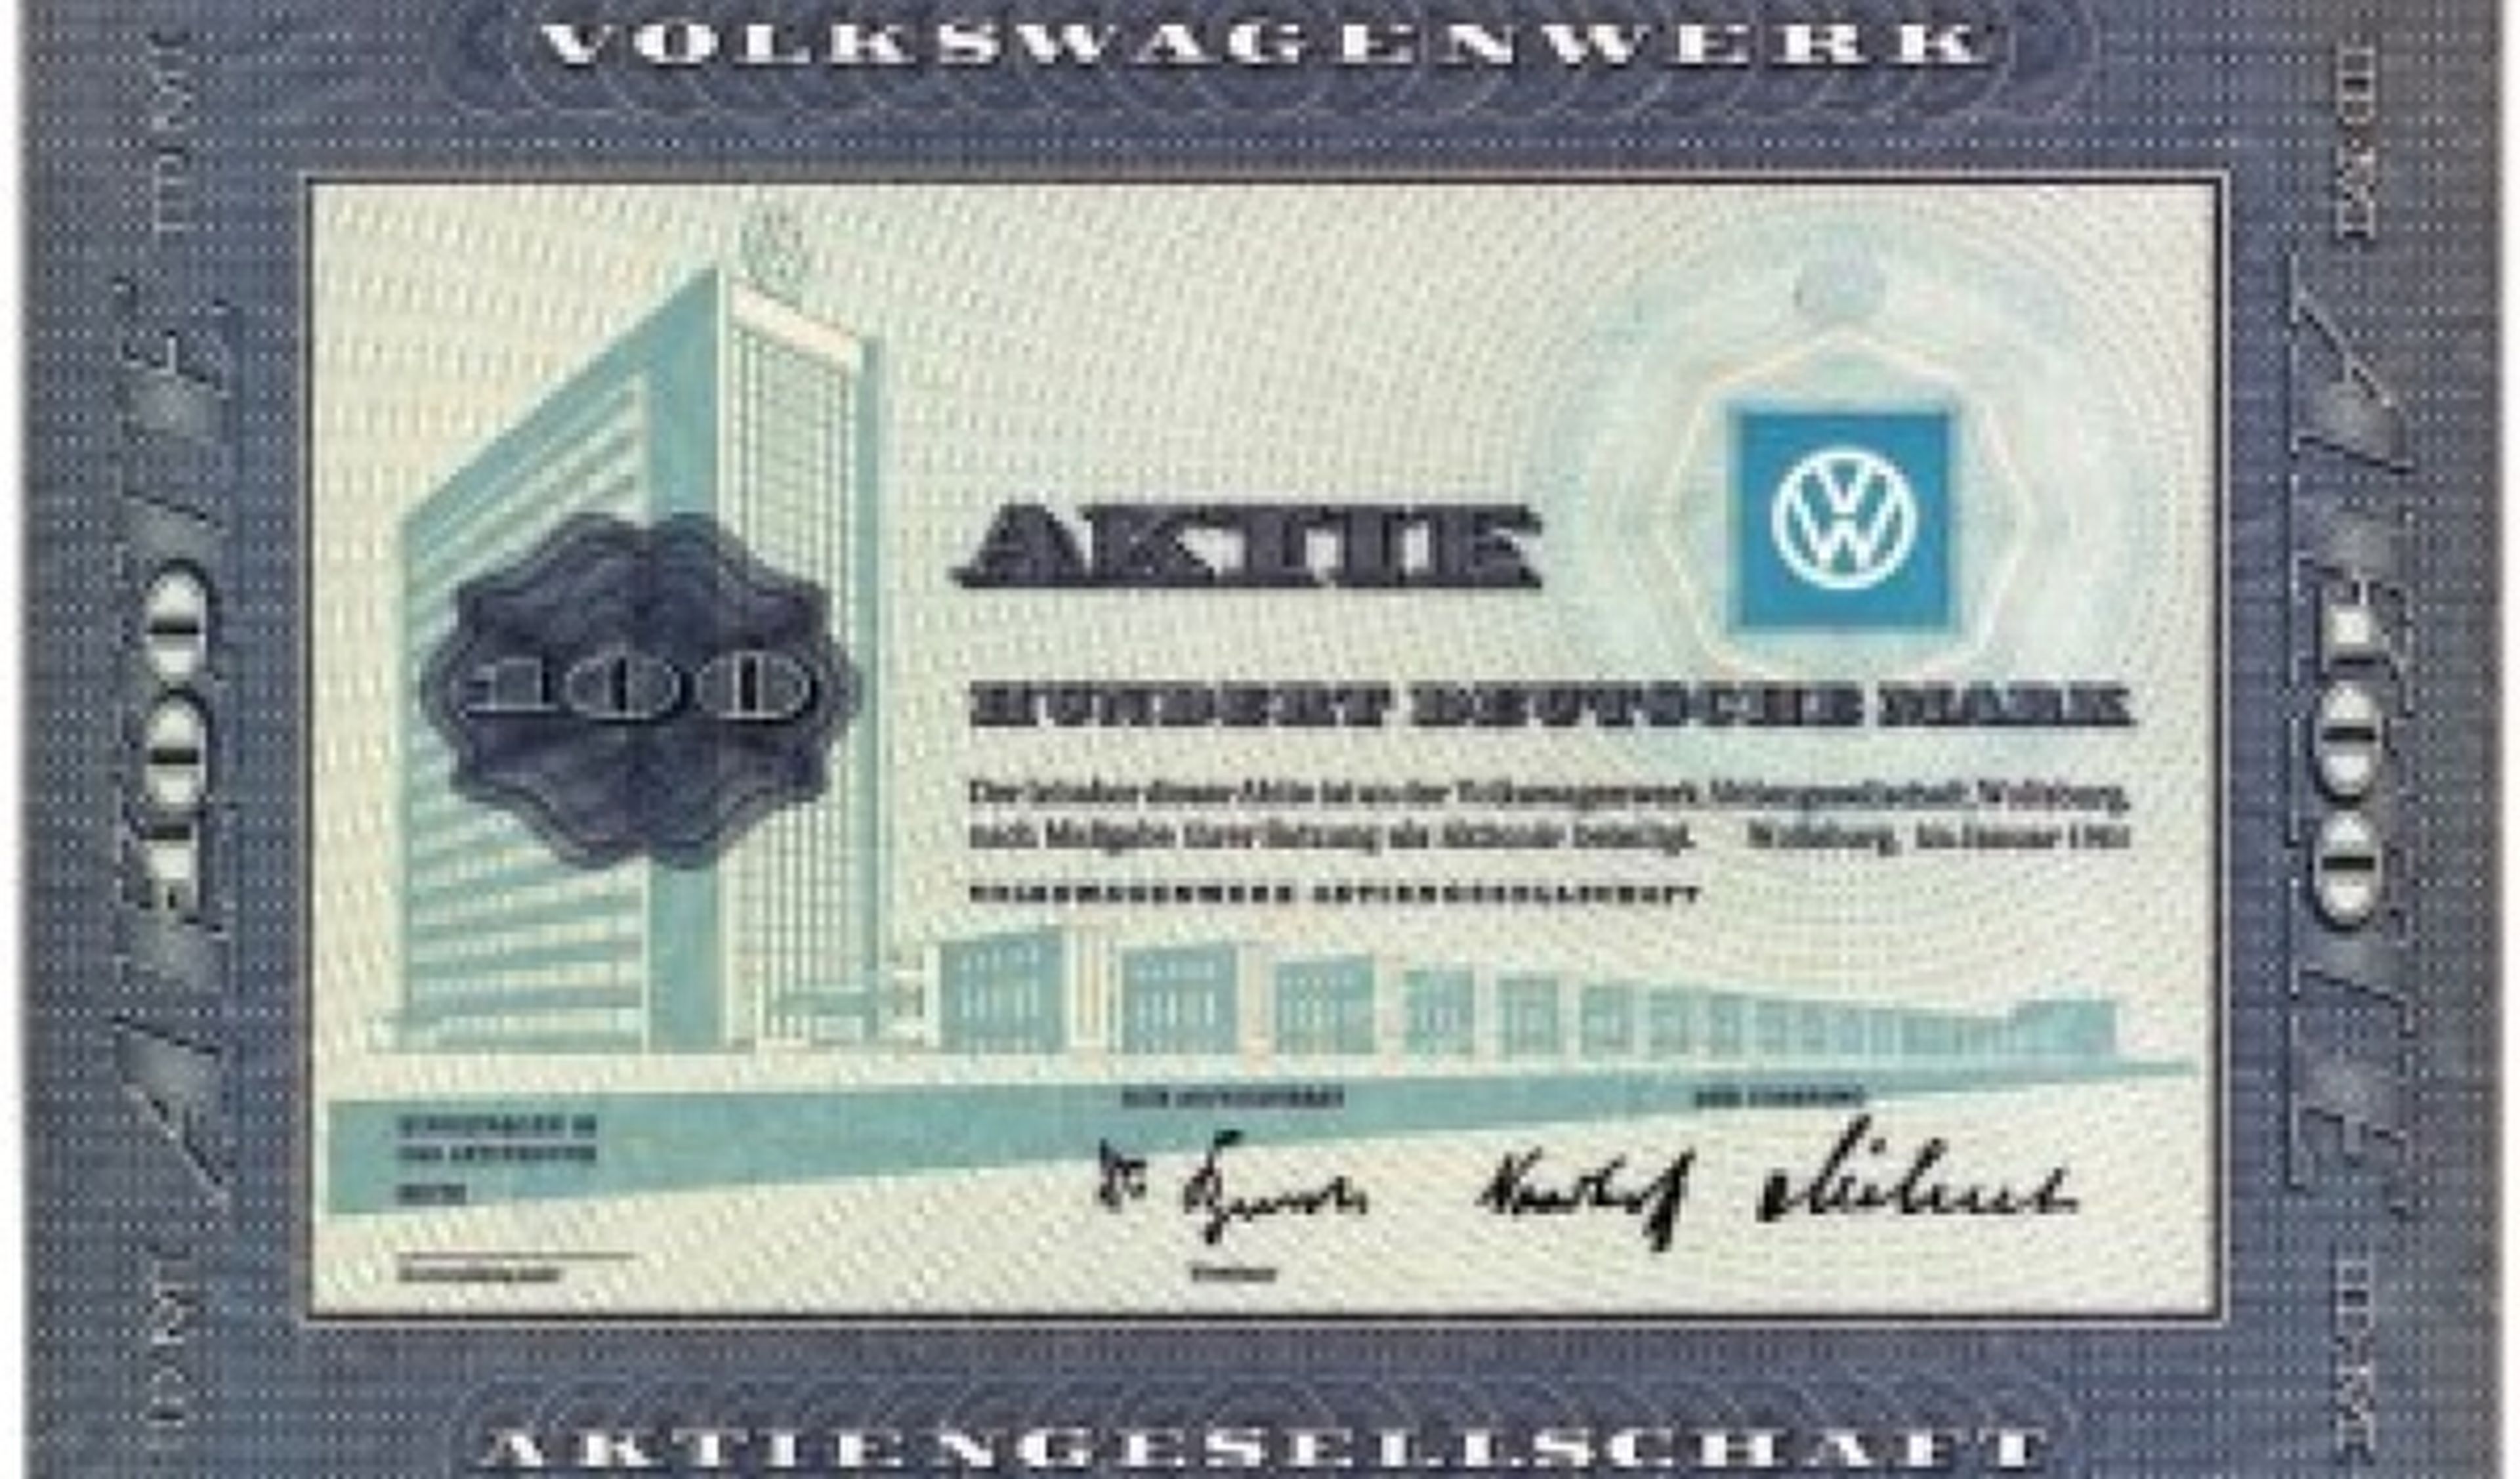 Volkswagen: 50 años cotizando en bolsa